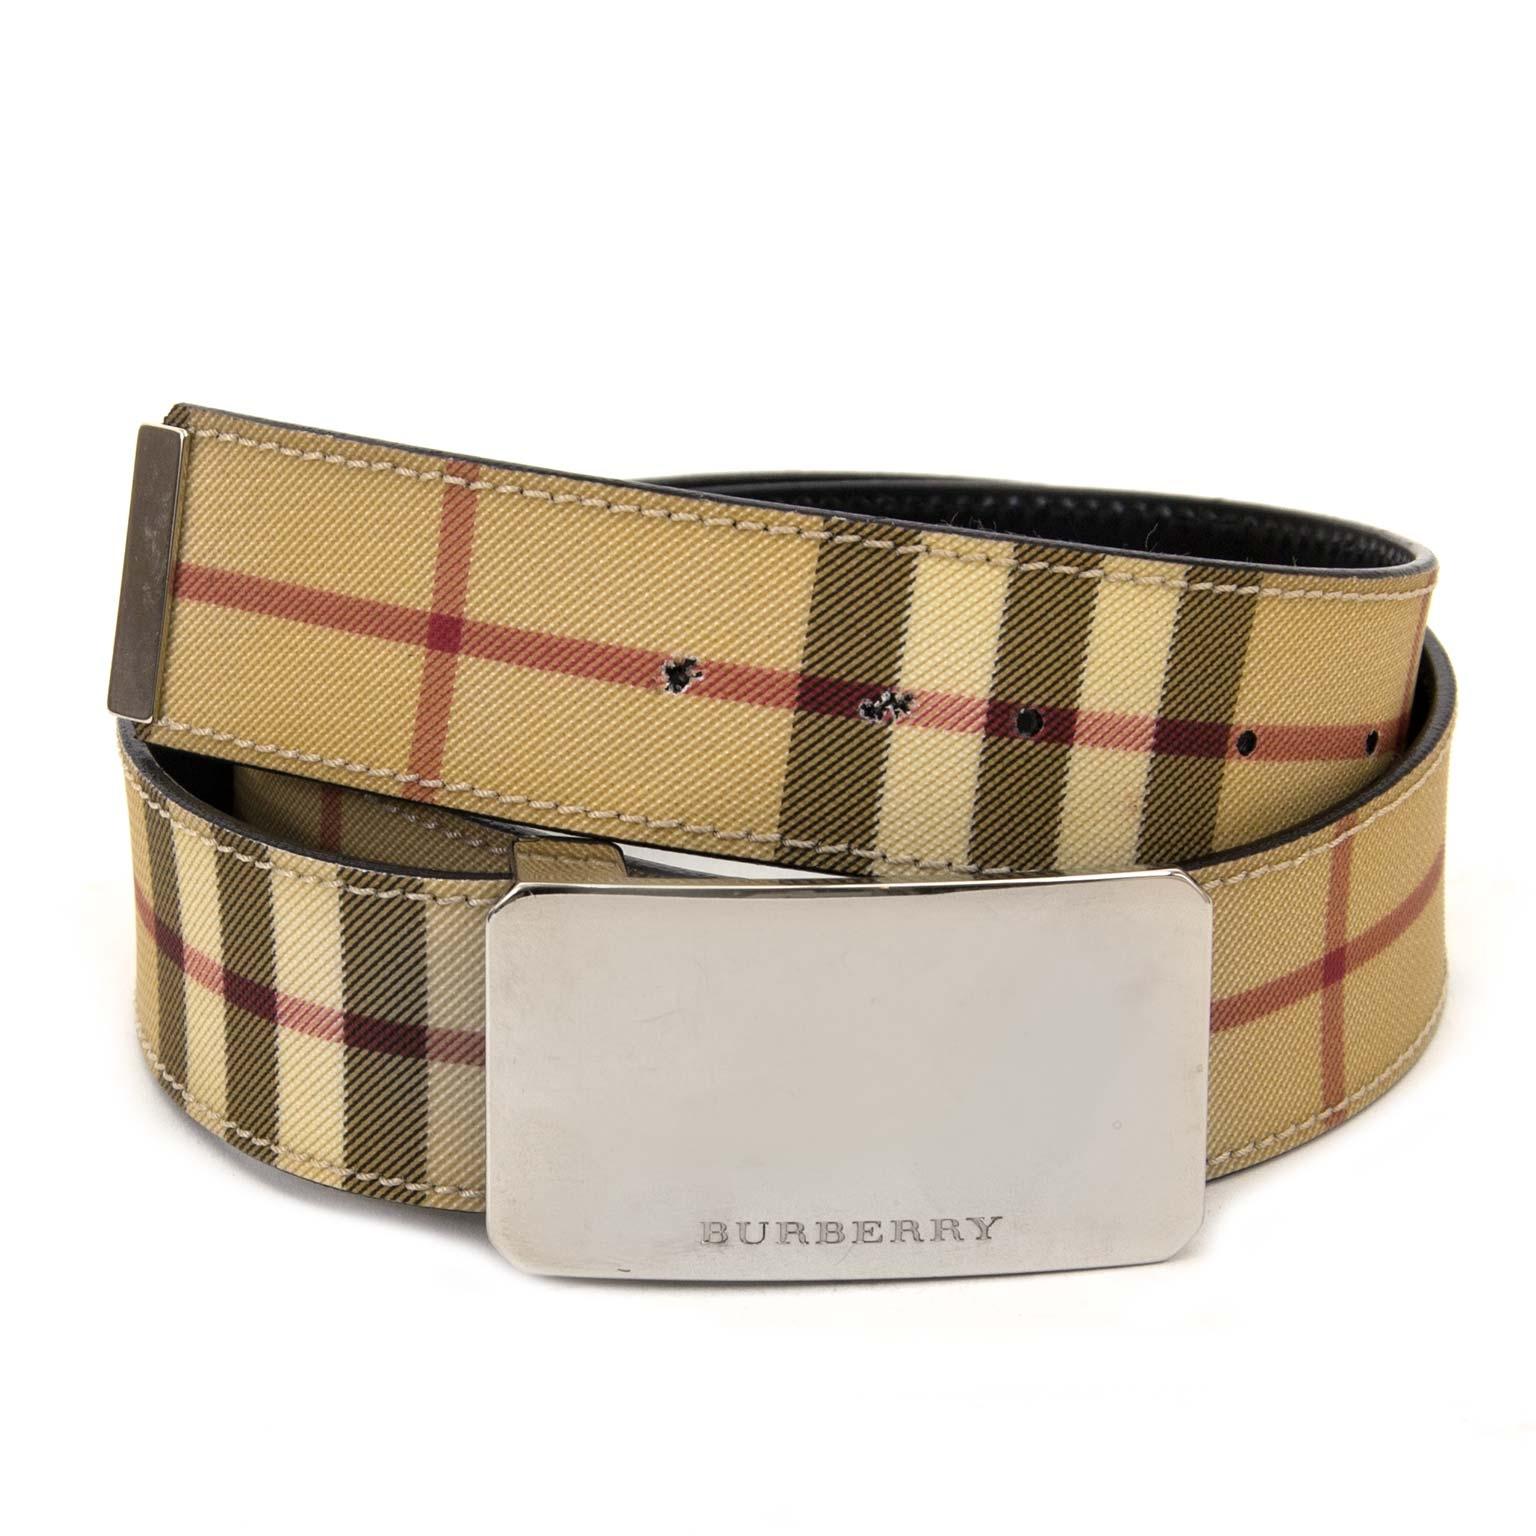 burberry nova check belt